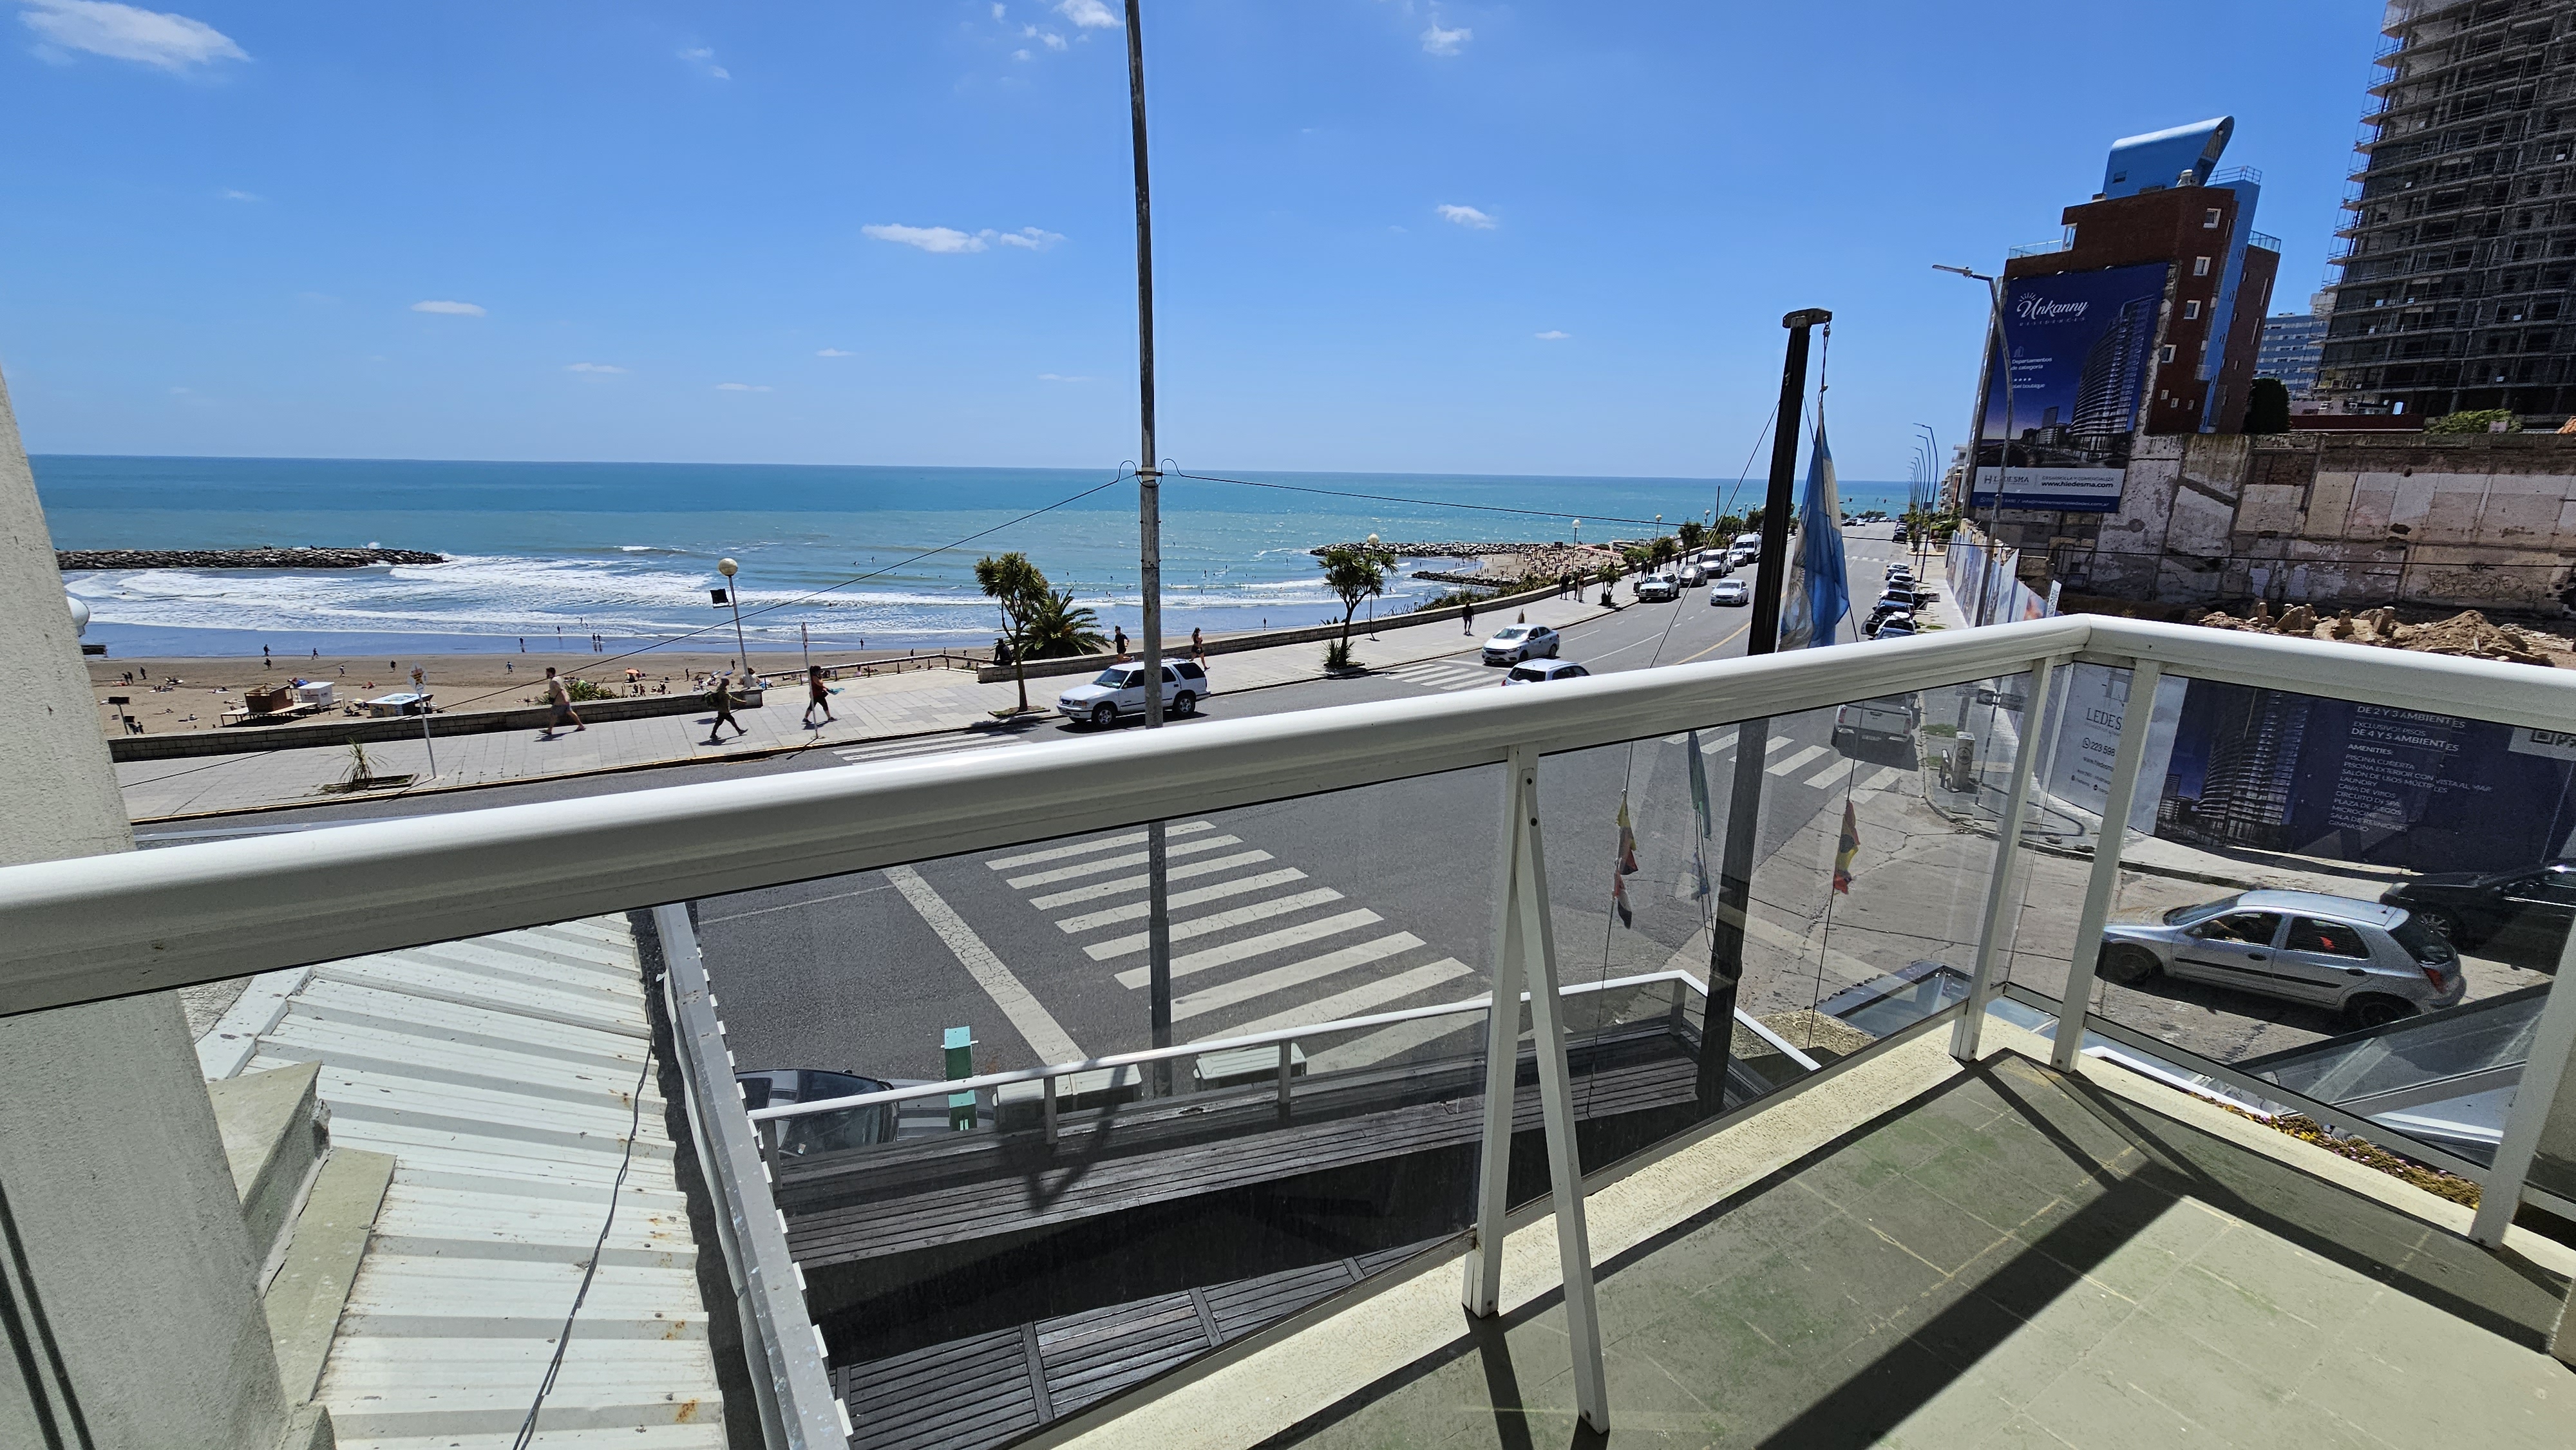 En venta departamento de 3 ambientes con vista al mar. Playa Varese